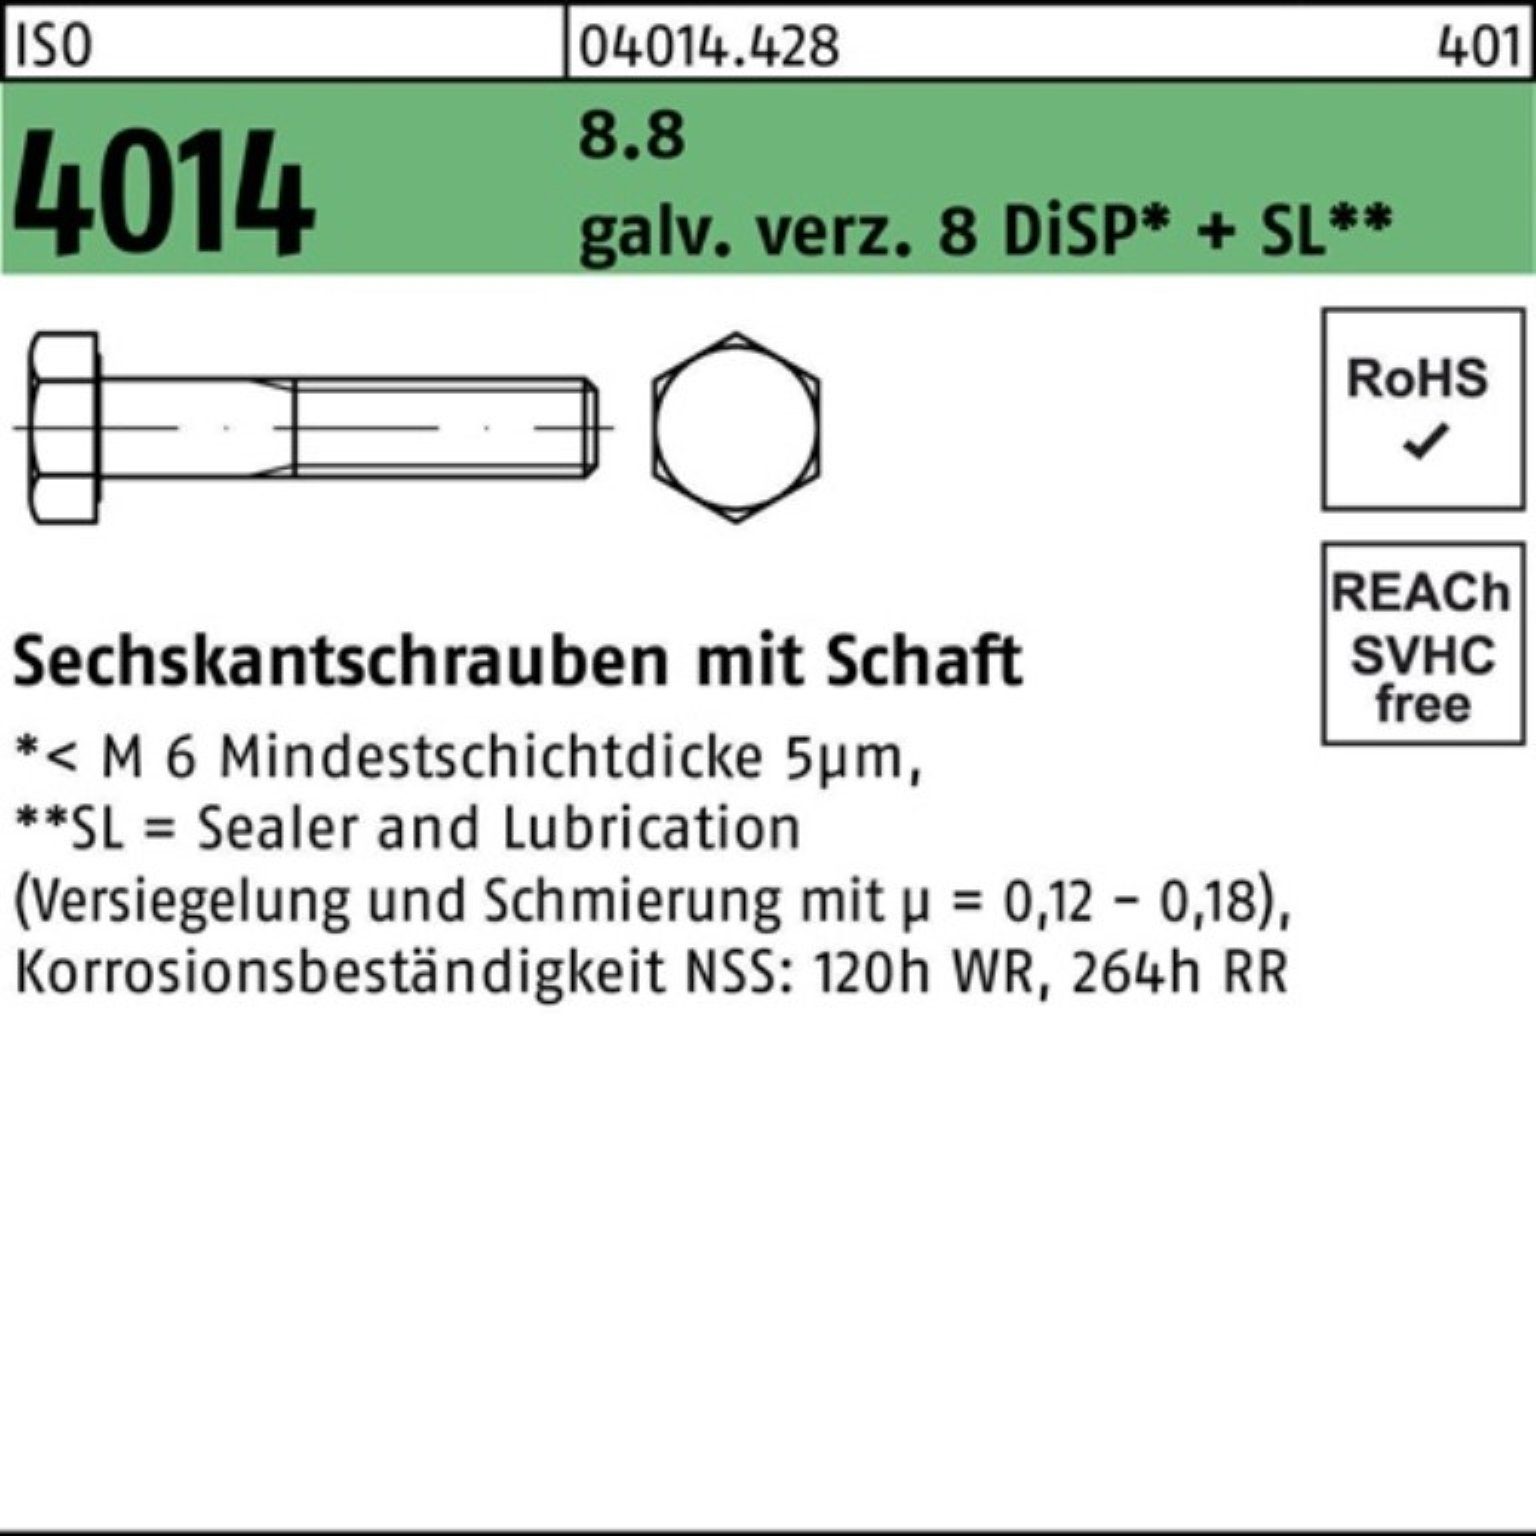 Schaft 200er 4014 Sechskantschraube galv.verz. 8 M5x50 ISO Bufab Di Sechskantschraube 8.8 Pack